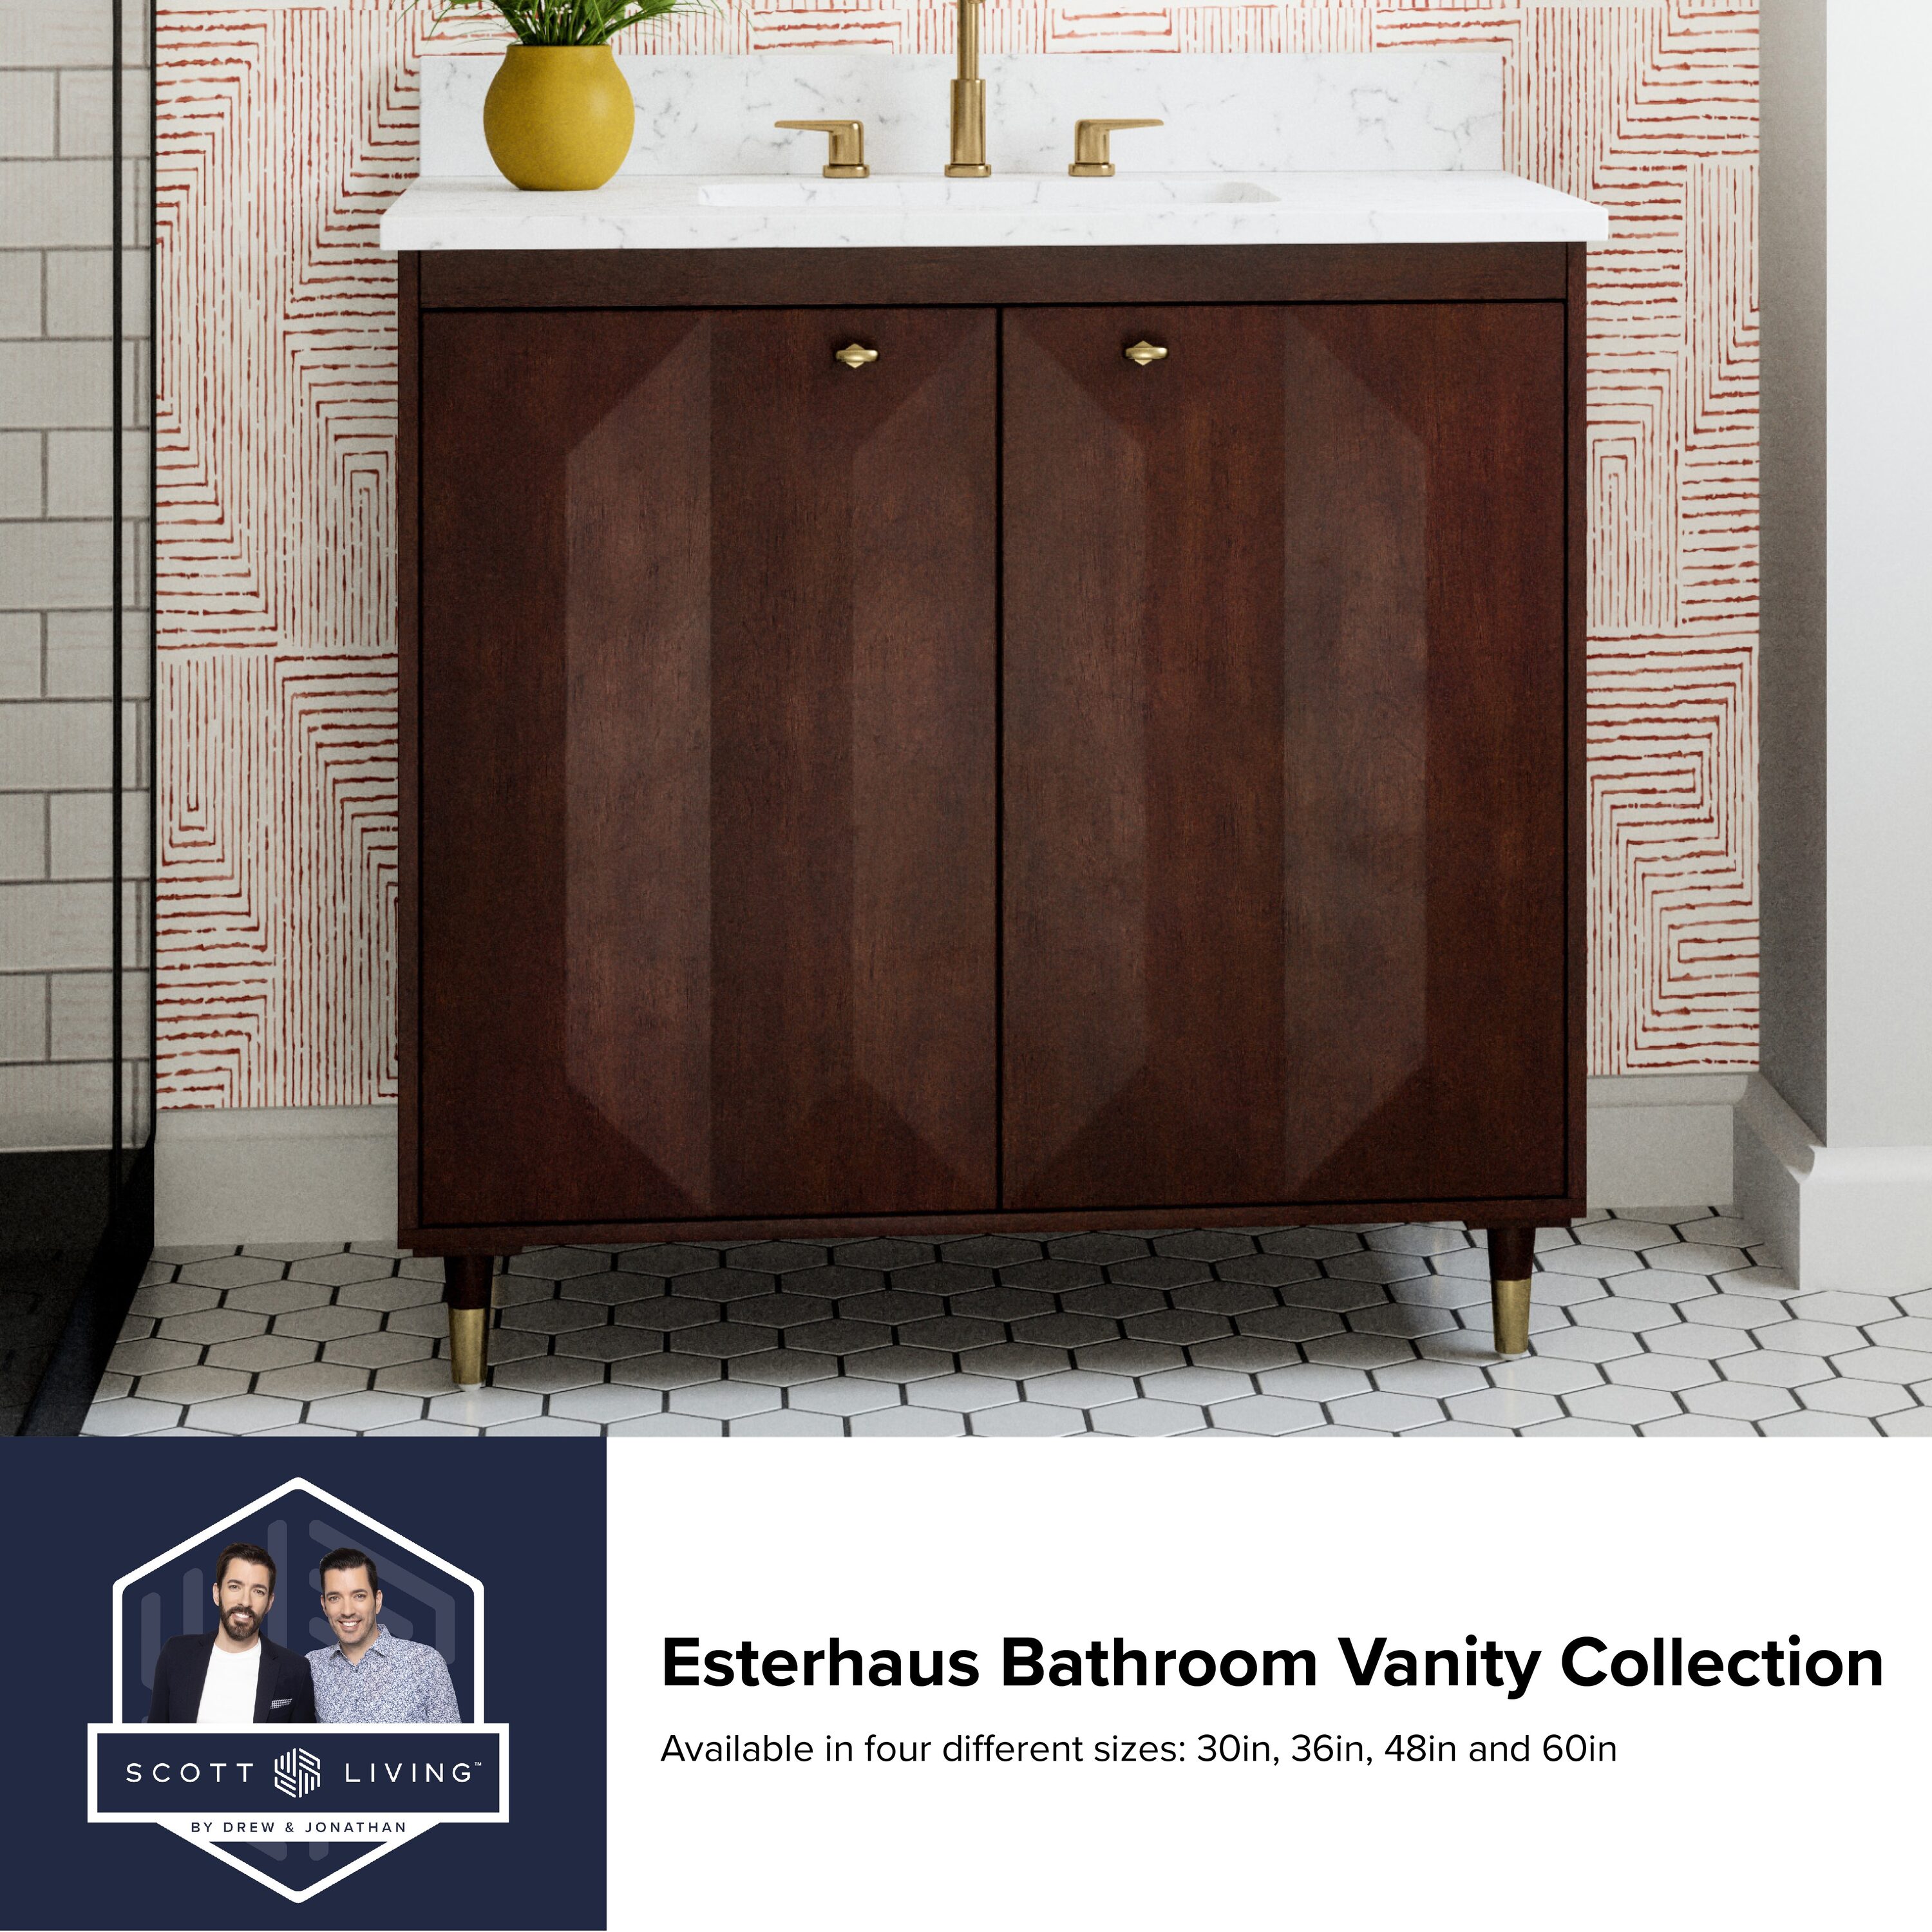 WELLFOR 5-Piece Concrete Bathroom Accessory Set in Beige for Vanity Countertops